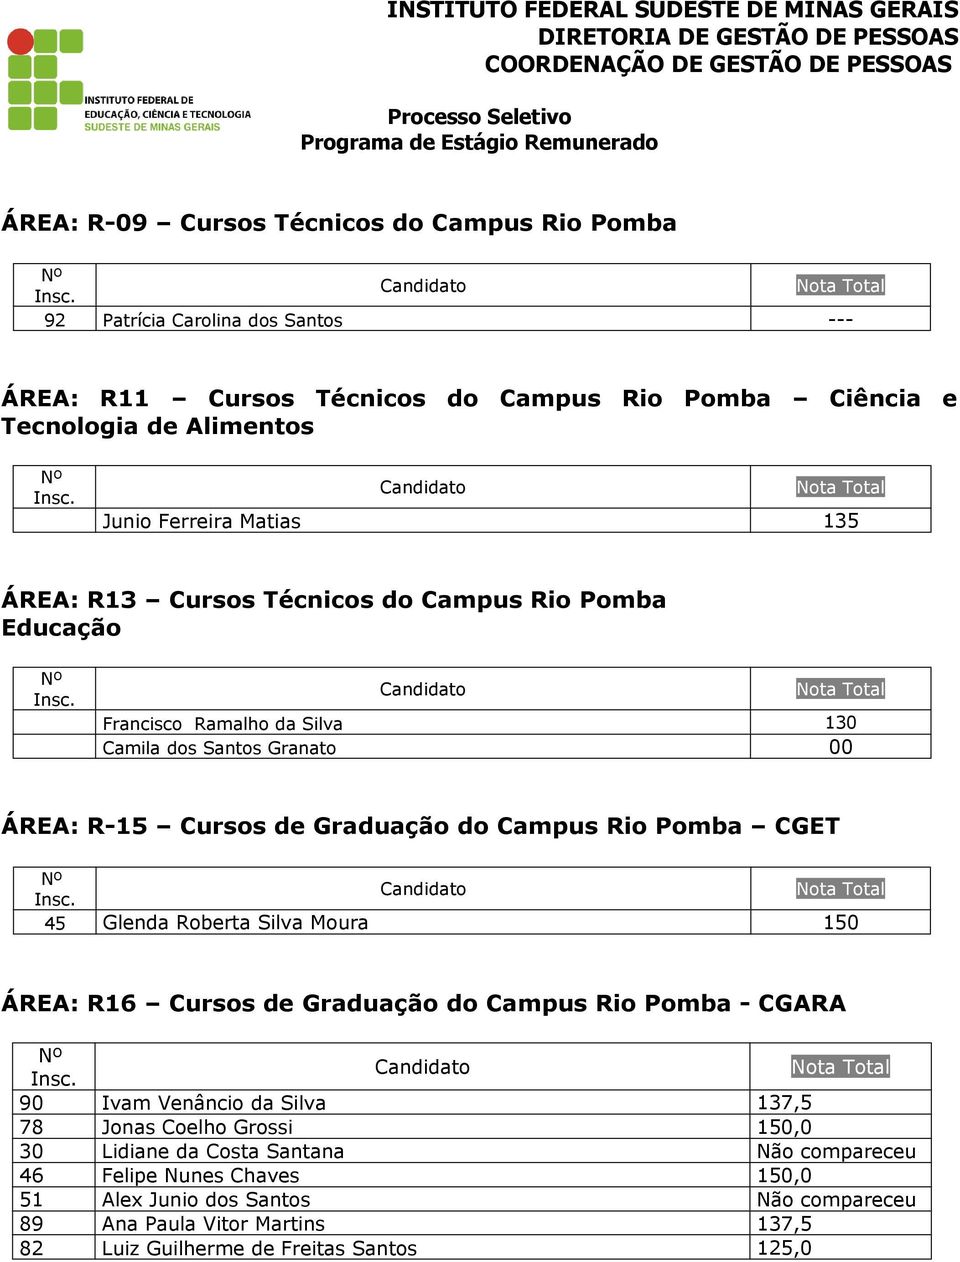 Campus Rio Pomba CGET 45 Glenda Roberta Silva Moura 150 ÁREA: R16 Cursos de Graduação do Campus Rio Pomba - CGARA 90 Ivam Venâncio da Silva 137,5 78 Jonas Coelho Grossi 150,0